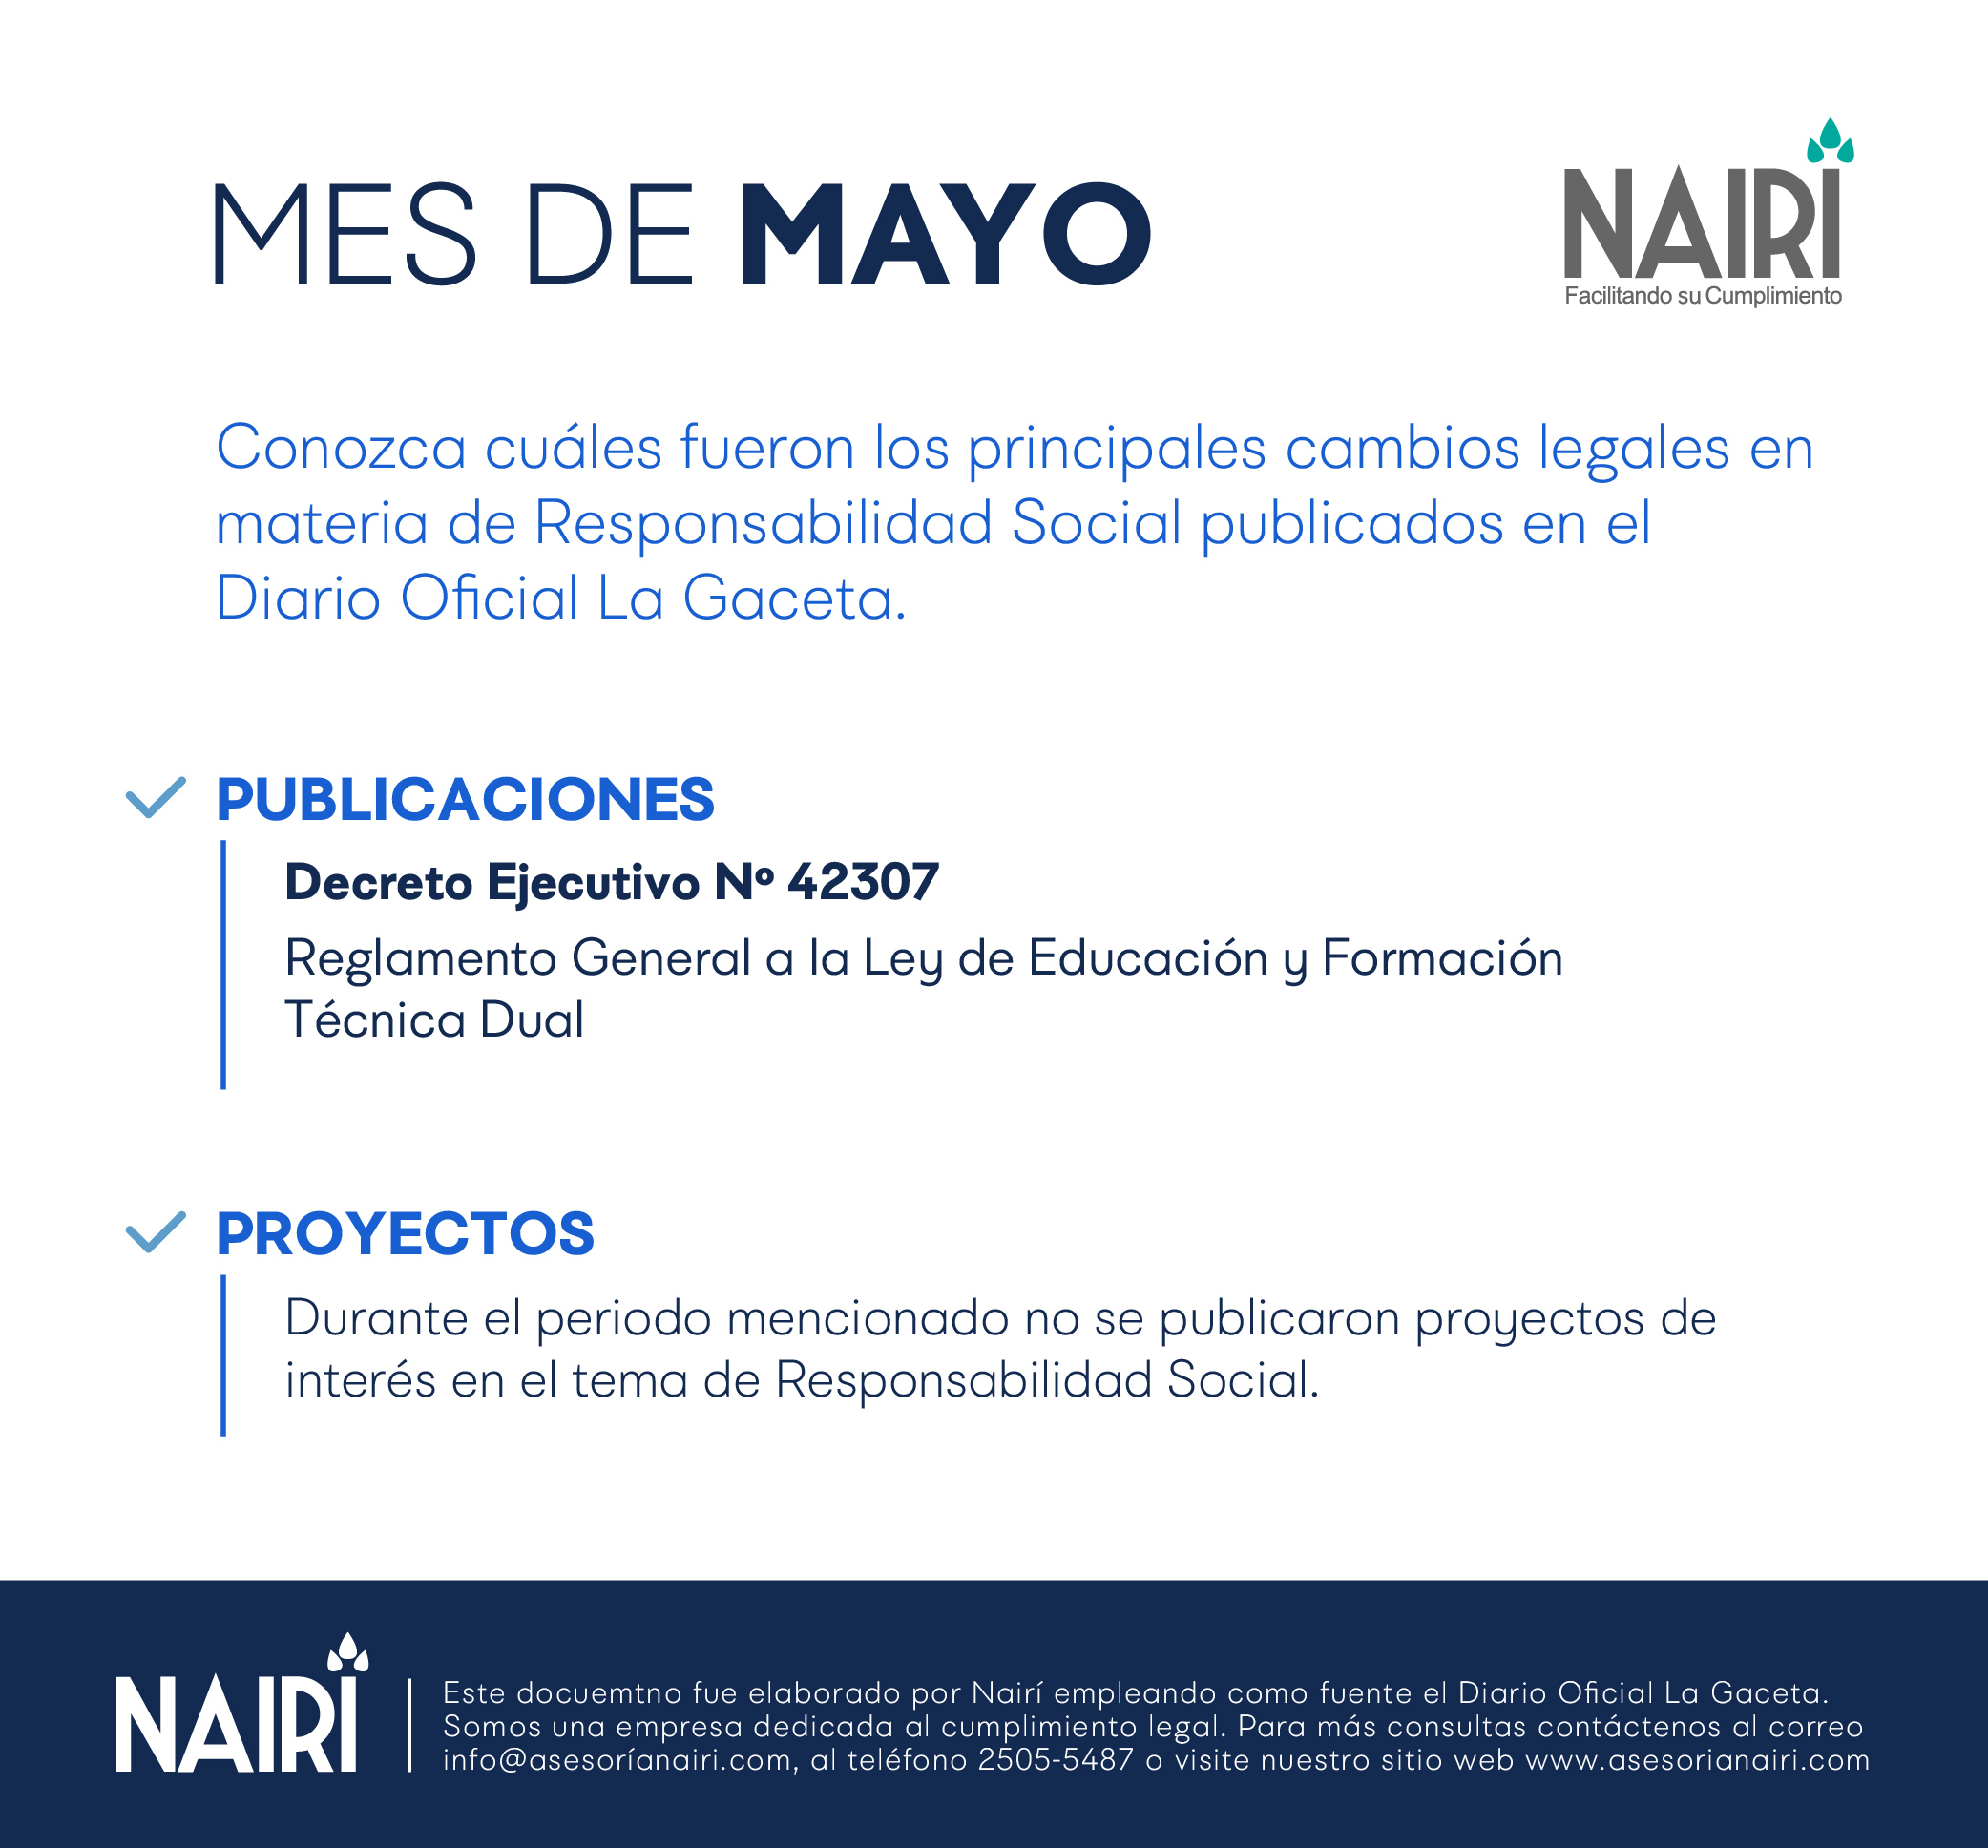 Reporte de Actualización Legal en RS y Sostenibilidad - Mayo 2020